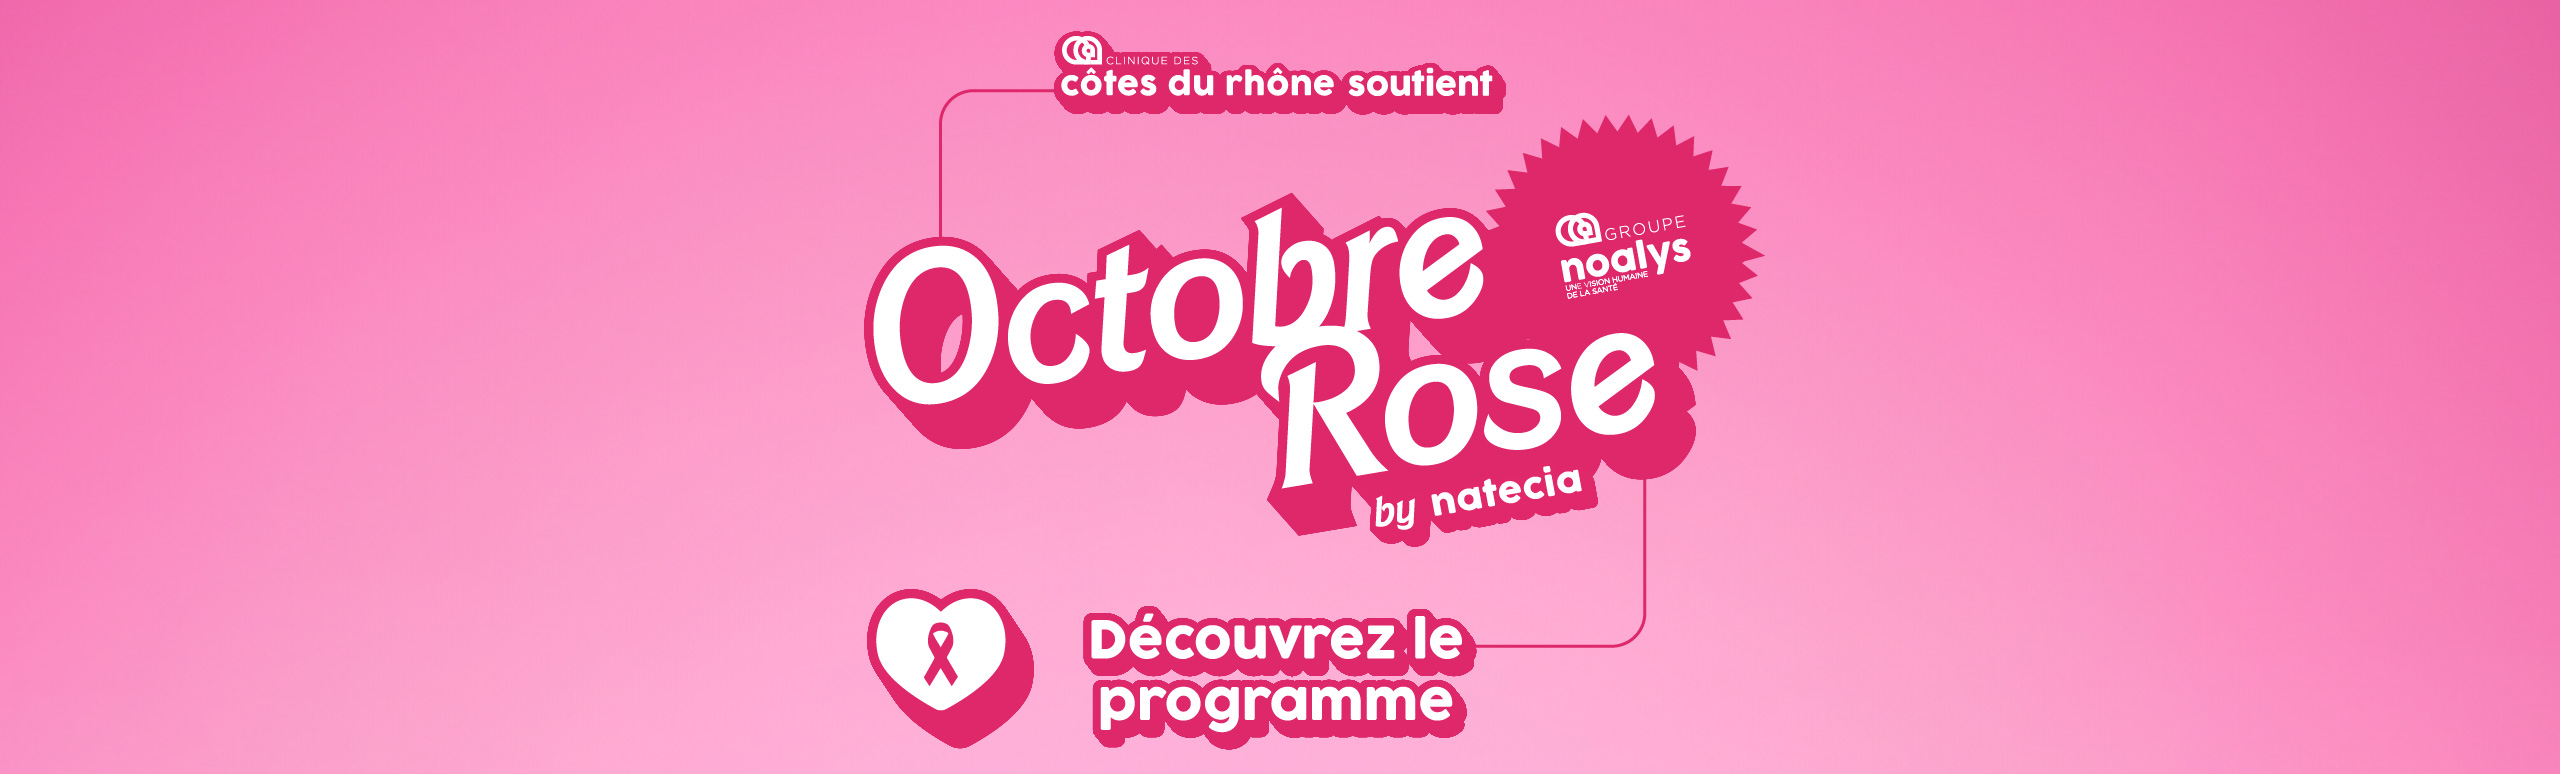 La Clinique des Côtes du Rhône soutient Natecia pour Octobre Rose